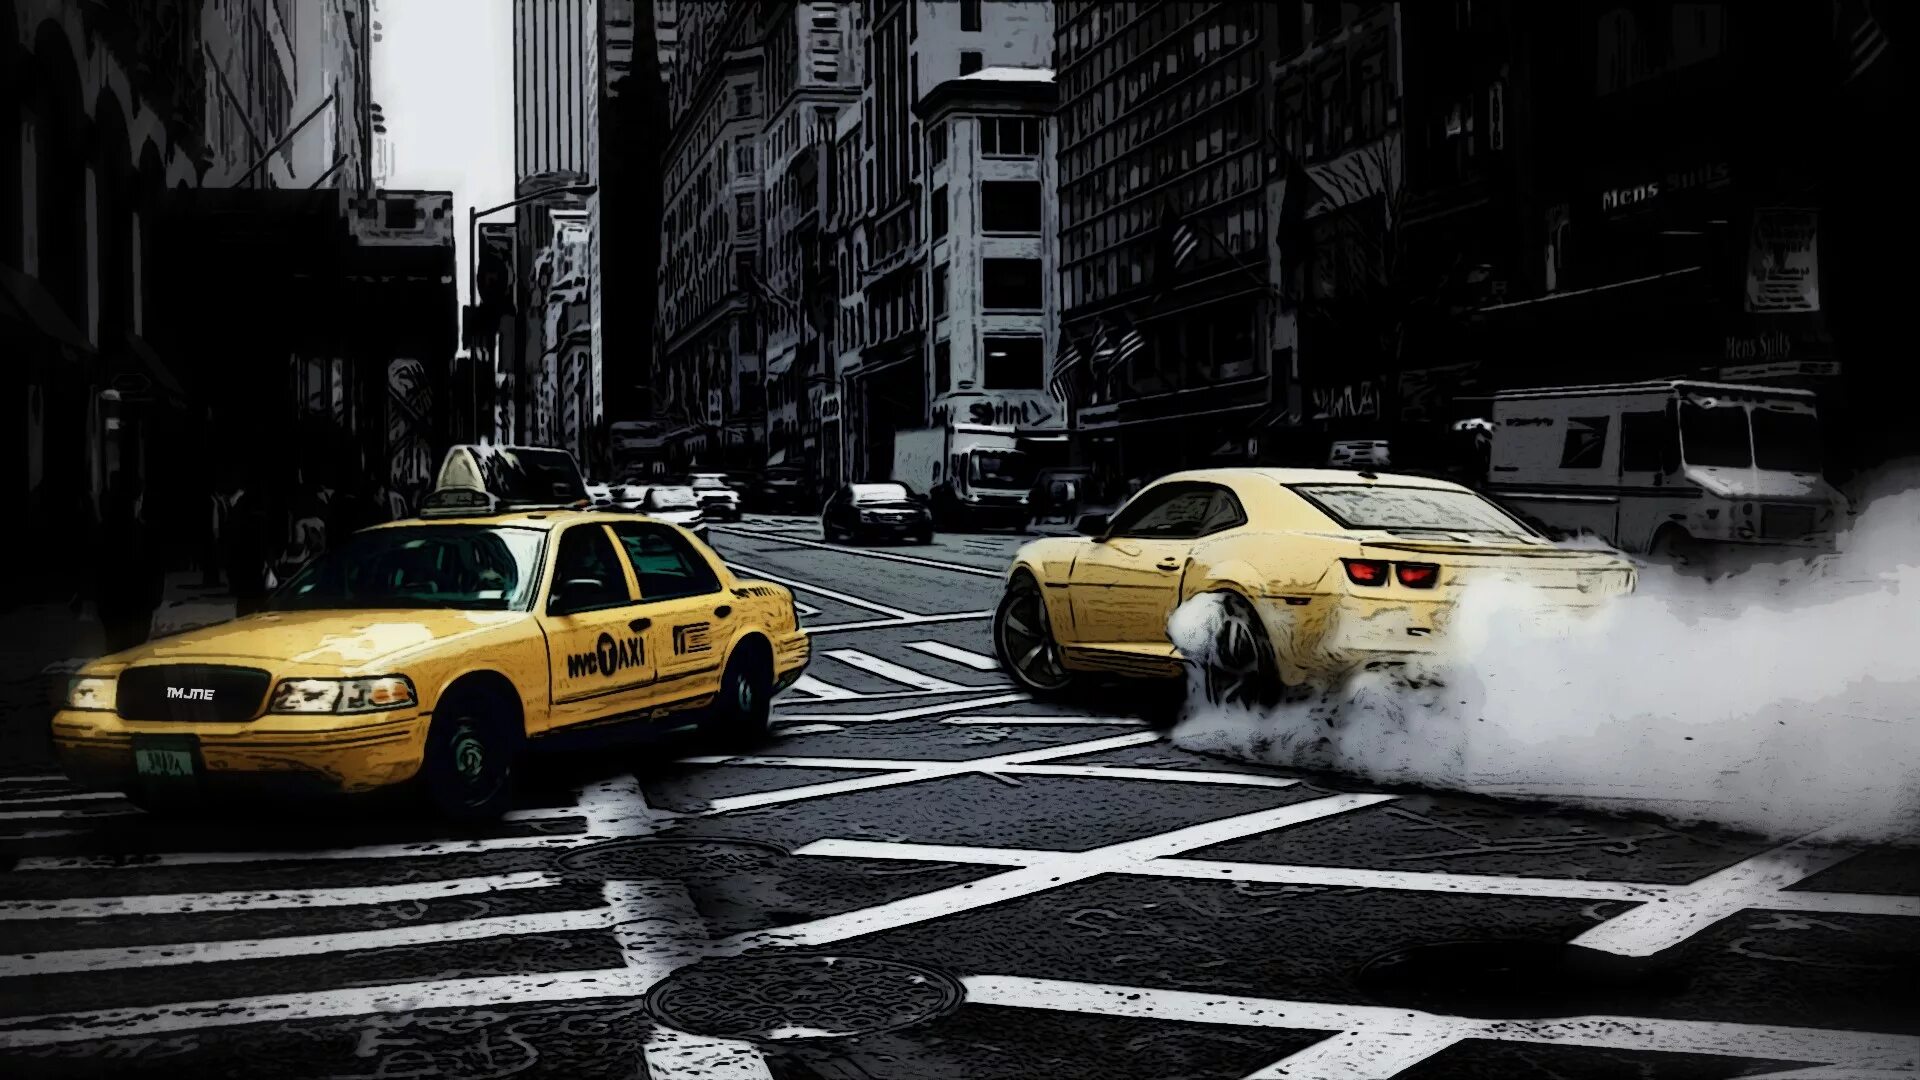 They driving to new york. Таксопарк в Нью-Йорке. Дрифт в Нью-Йорке. Нью-Йоркское такси / Taxi..